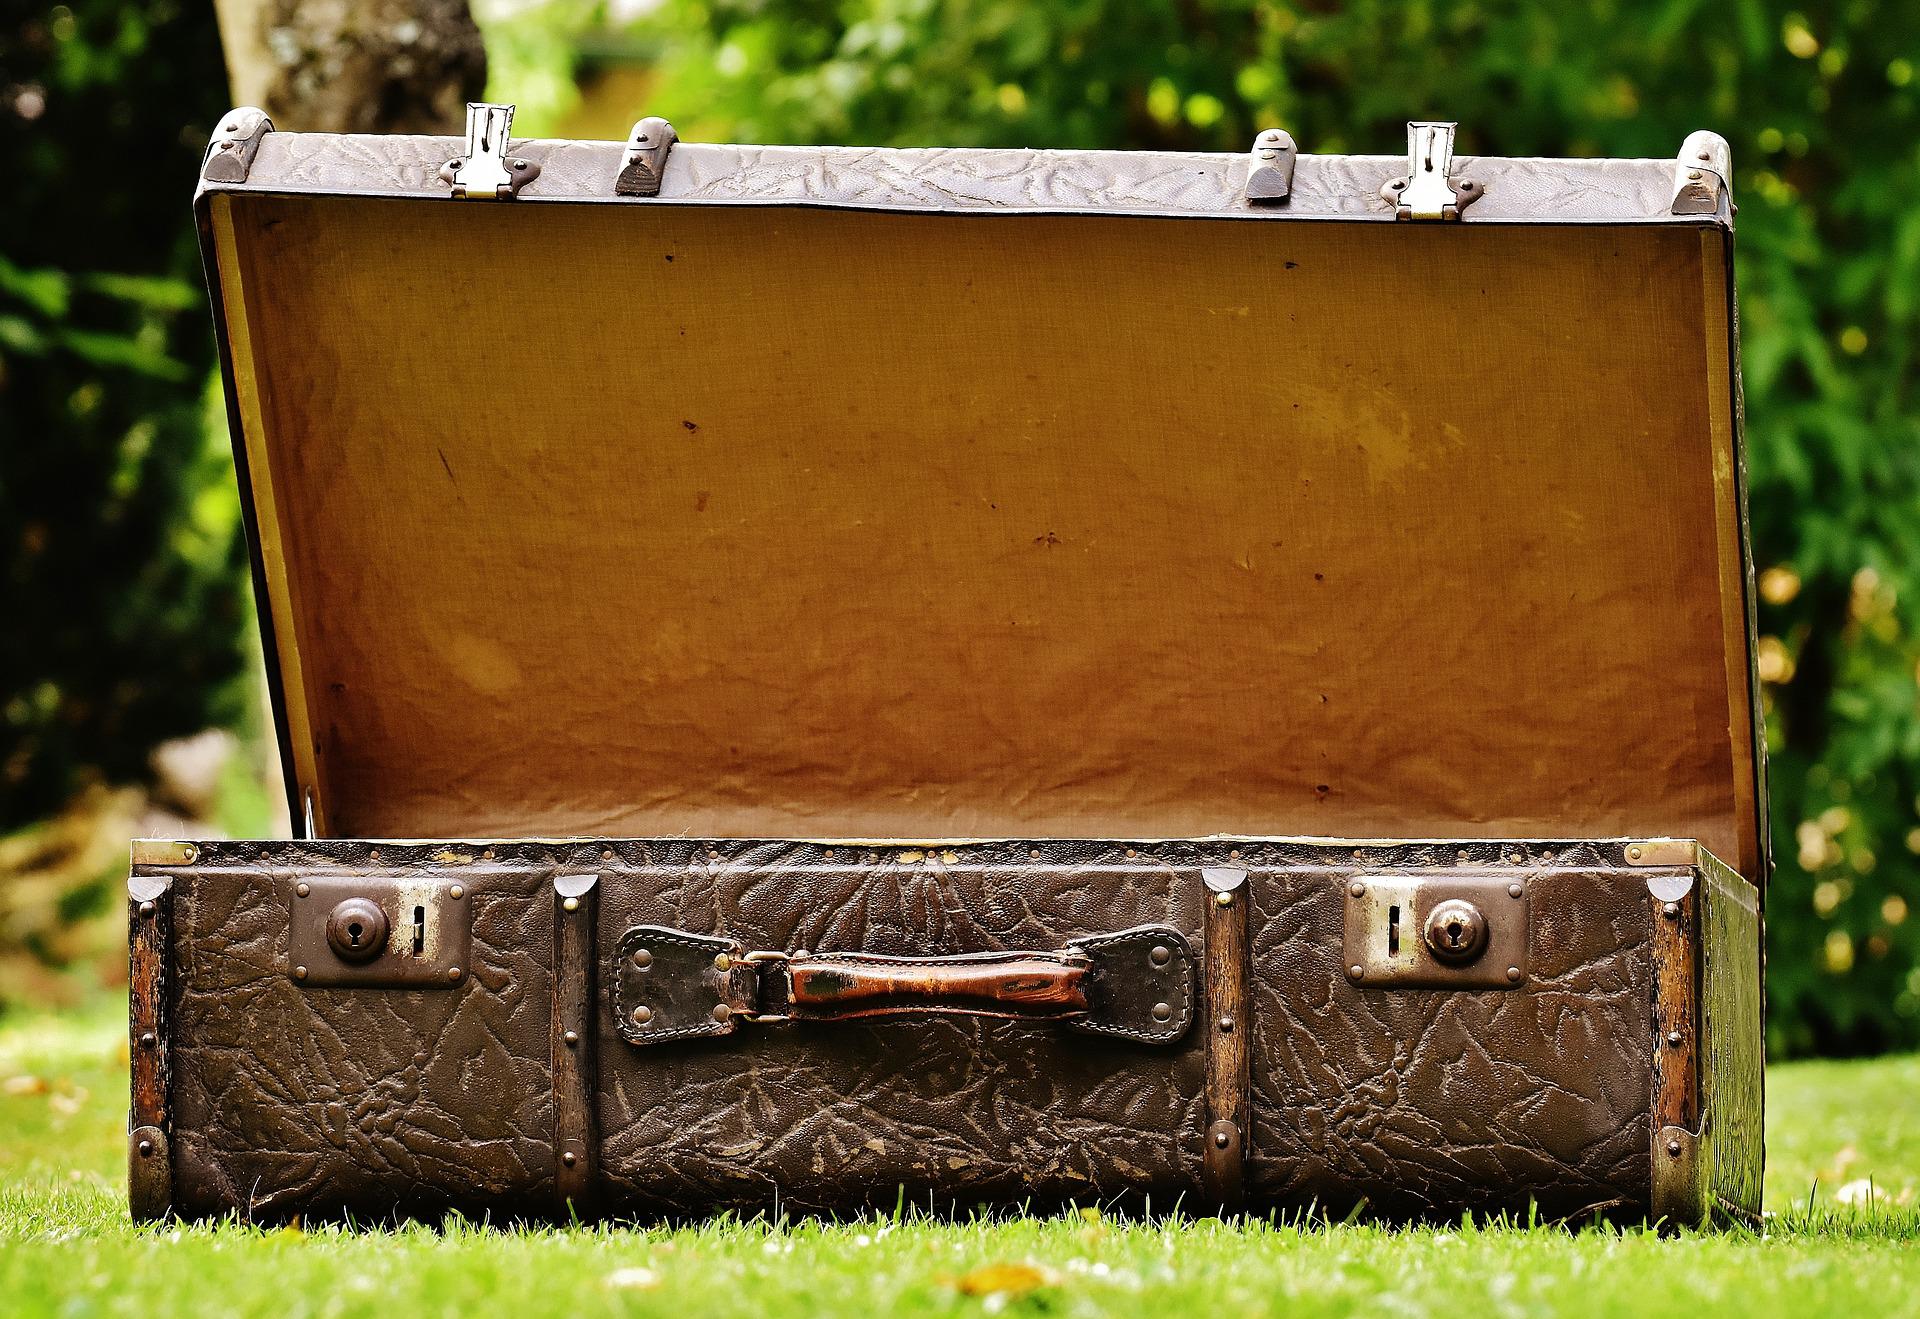 suitcase-1645229_1920